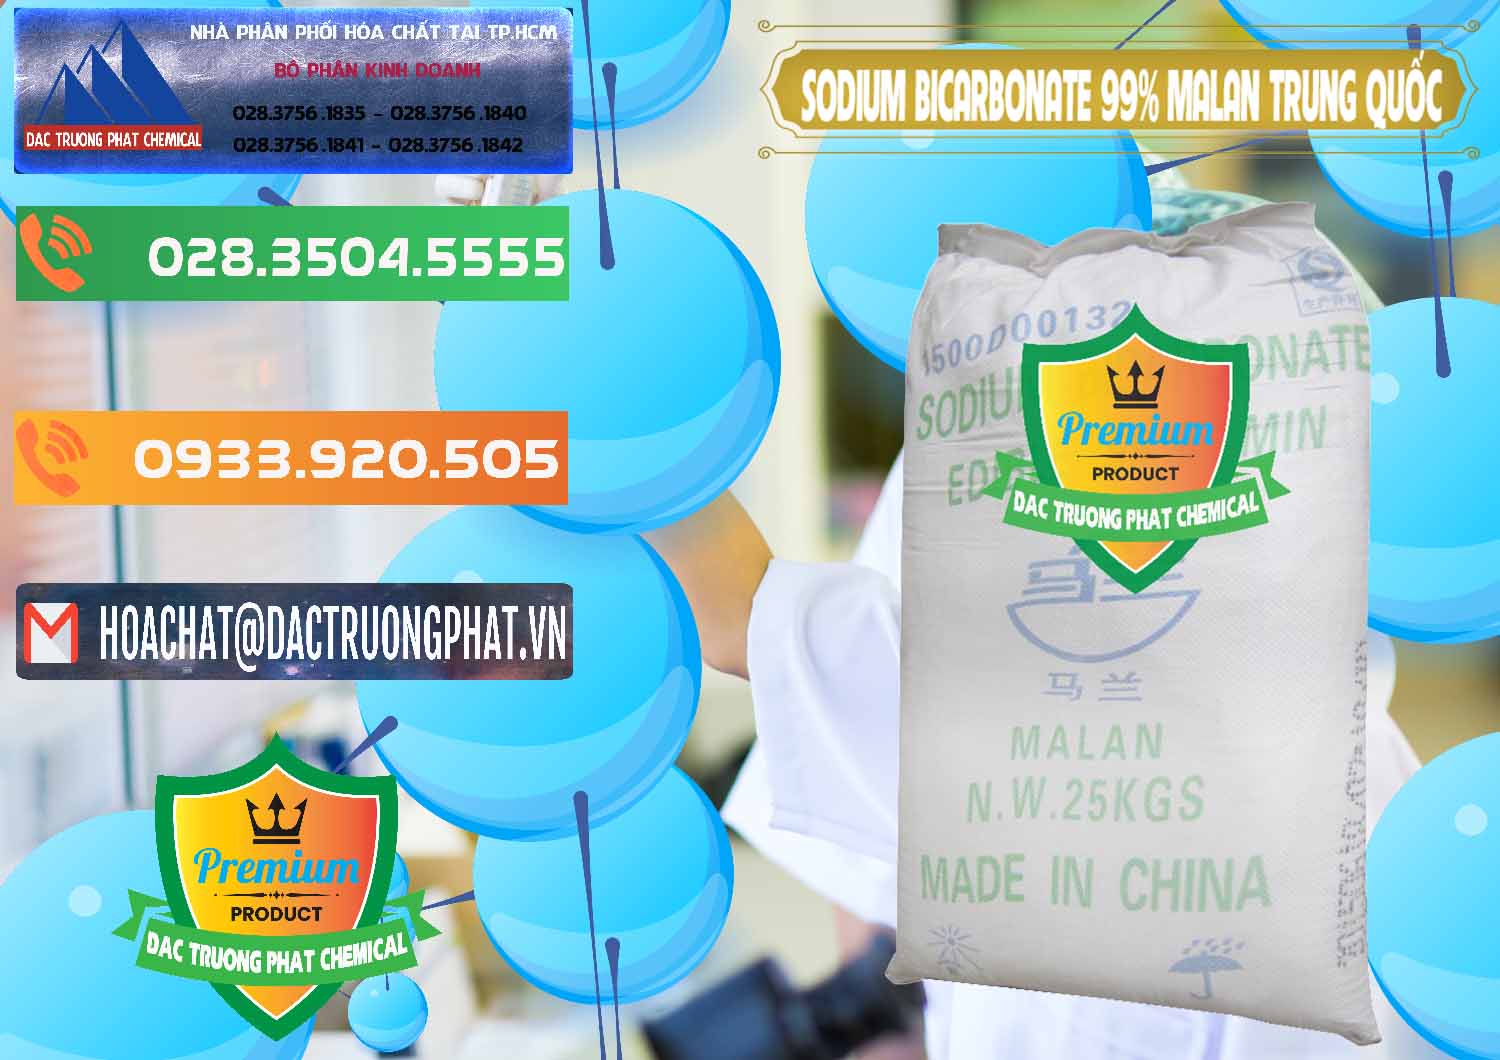 Đơn vị chuyên bán ( cung cấp ) Sodium Bicarbonate – Bicar NaHCO3 Malan Trung Quốc China - 0218 - Nơi chuyên cung ứng - phân phối hóa chất tại TP.HCM - hoachatxulynuoc.com.vn